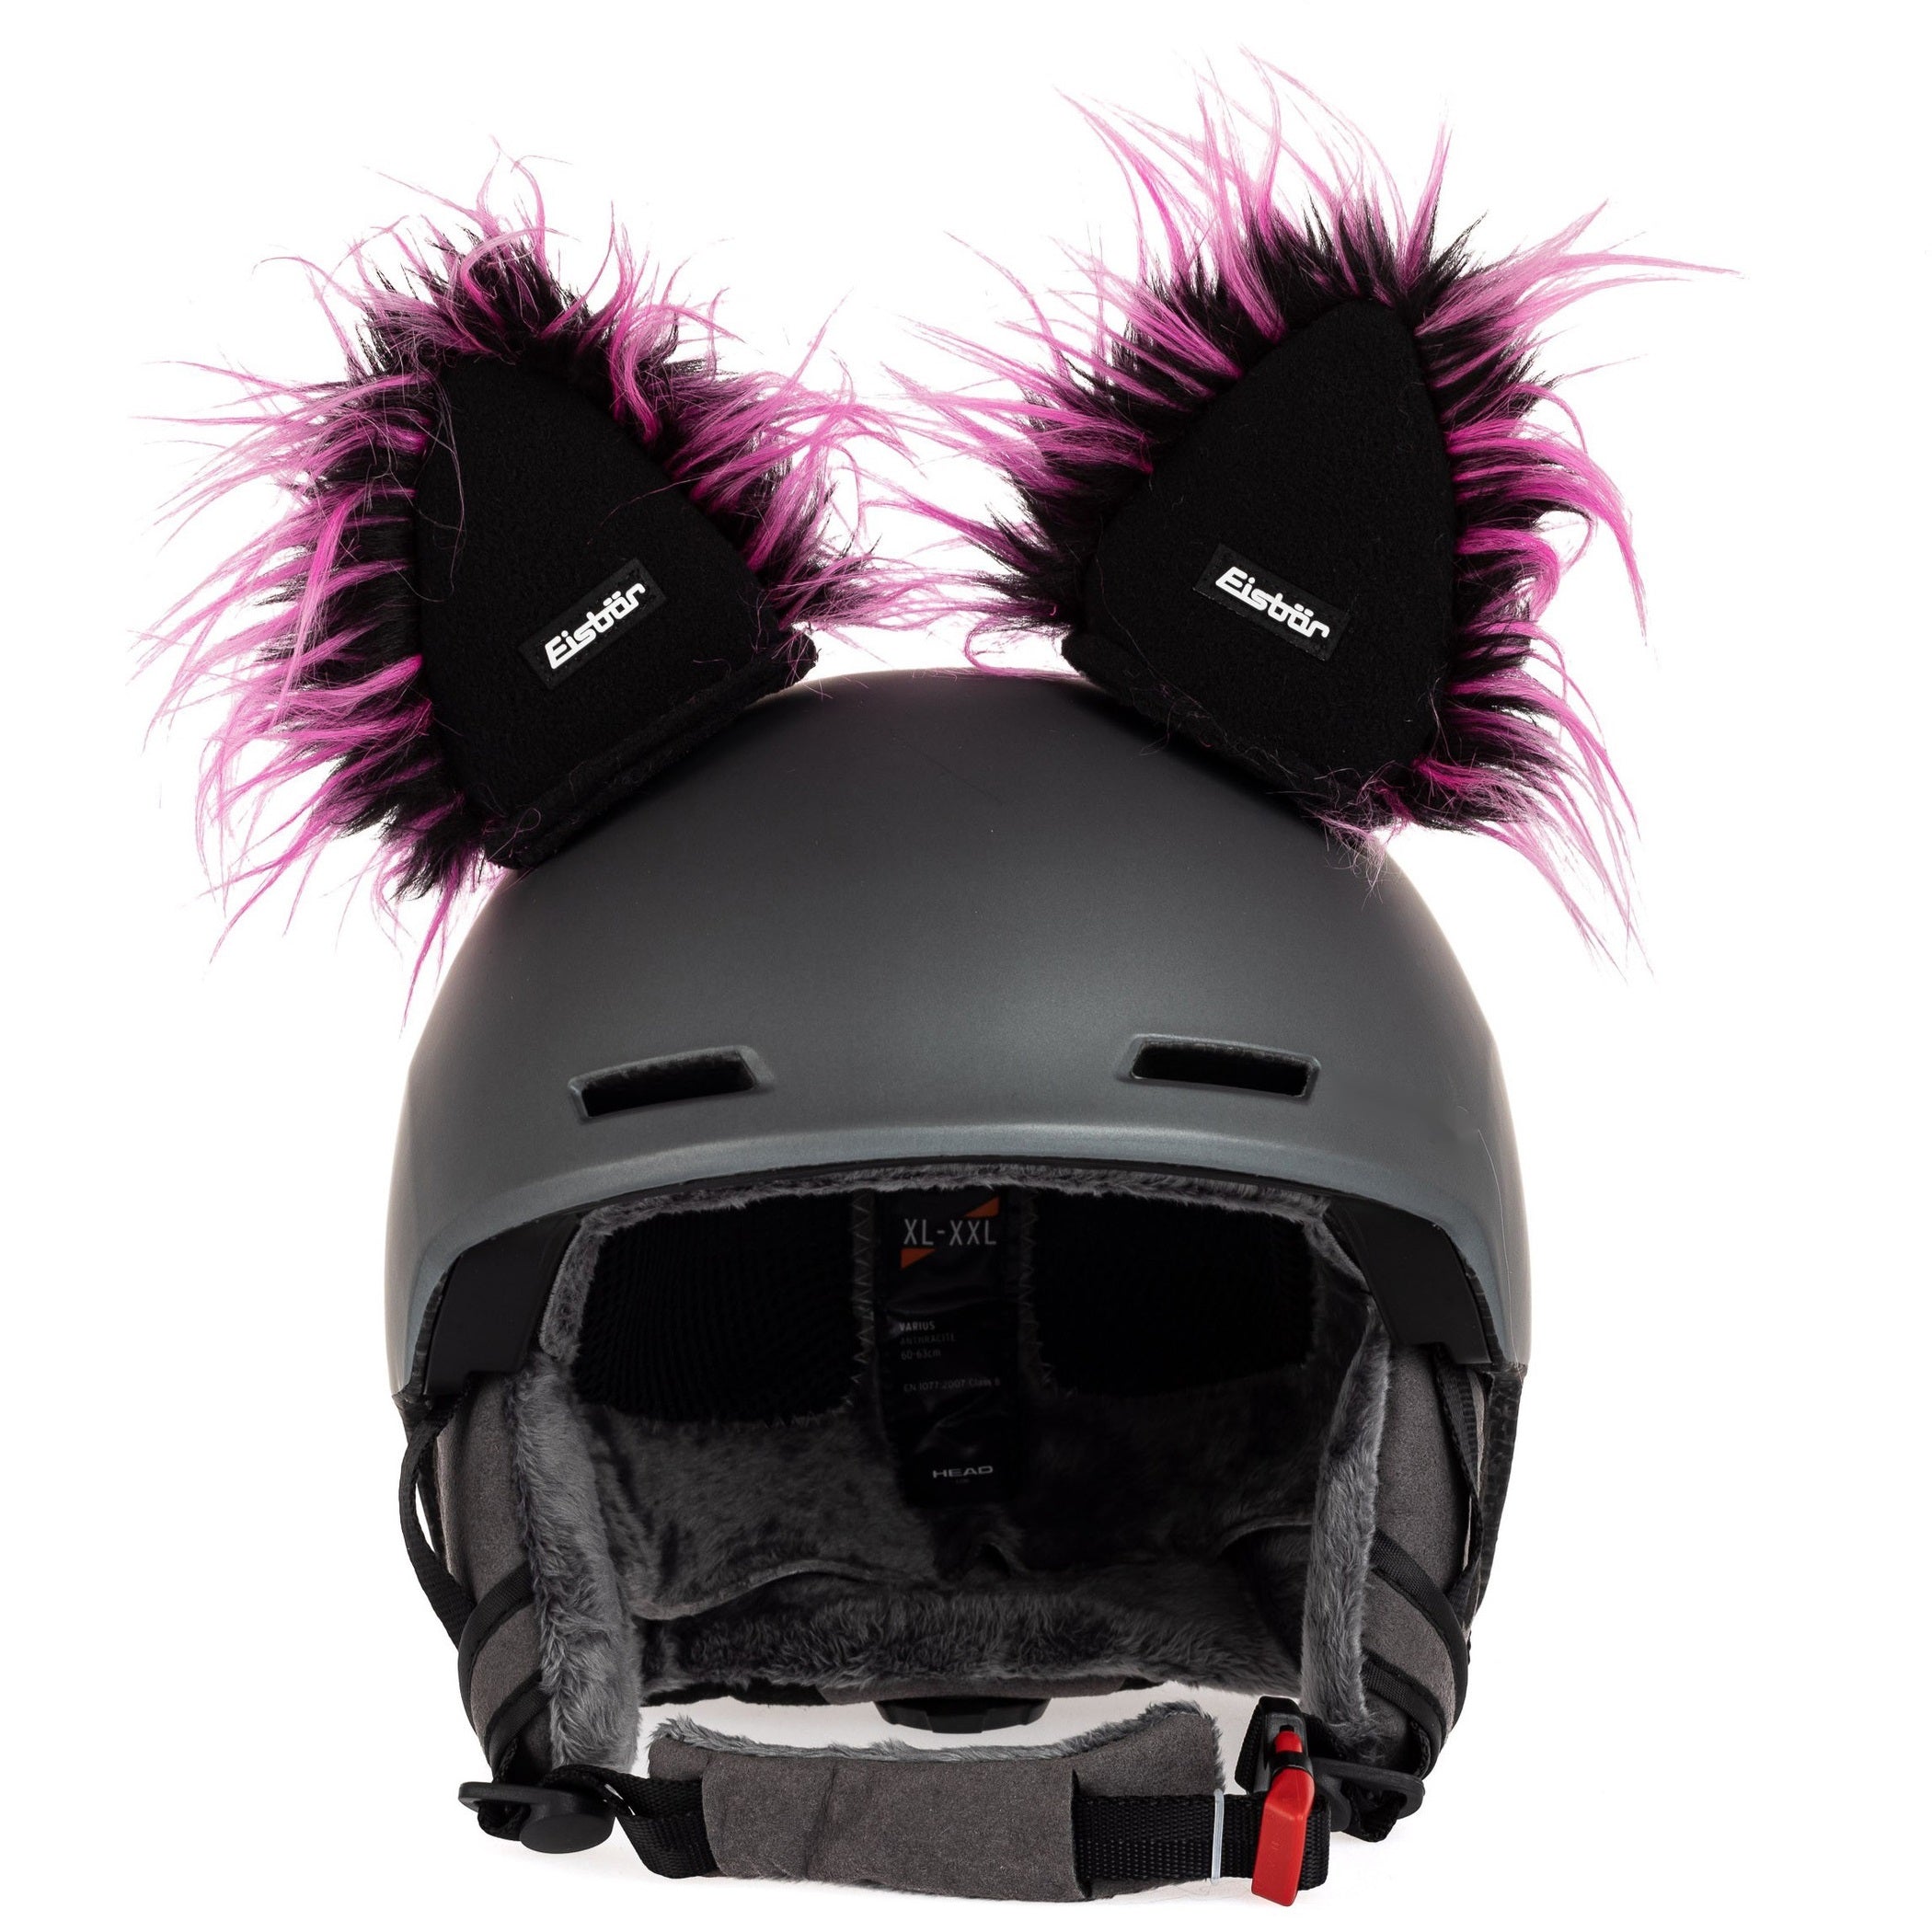 Crazy Ears Accessori per Casco Orecchie Gatto Tigre Lux Rana, Orecchie Ski  Adatto per Casco da Sci, Casco da Motociclista, Casco da Bici e Molto Altro